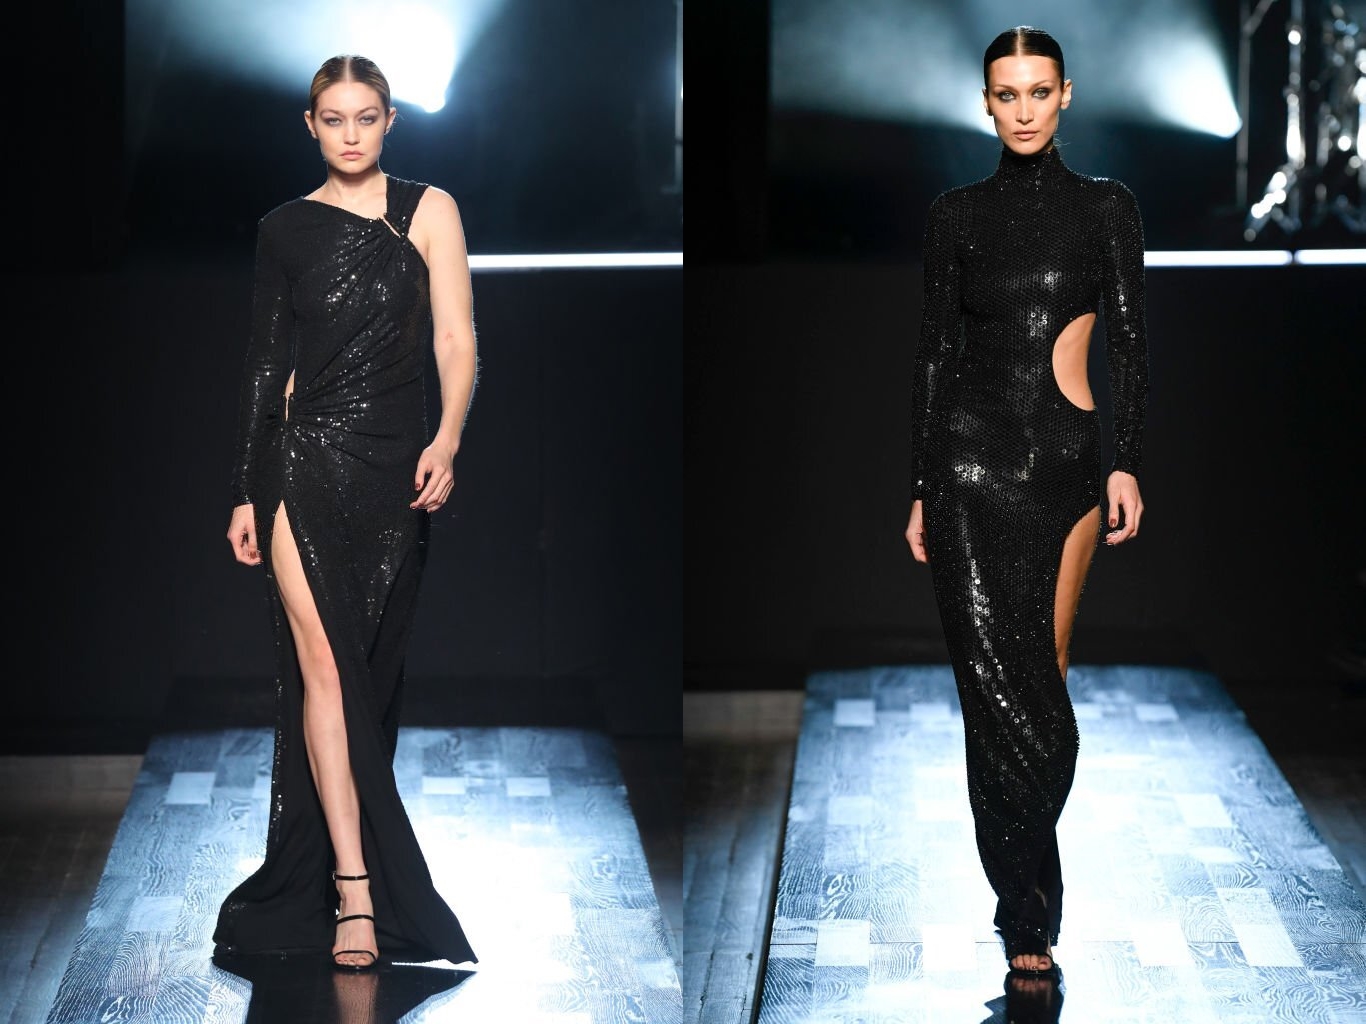 Gigi và Bella sải bước trên sàn diễn Michael Kors thuộc BST Thu - Đông của Tuần lễ Thời trang New York 2022 trong những chiếc đầm màu đen đính sequin, để kiểu tóc búi bóng mượt.